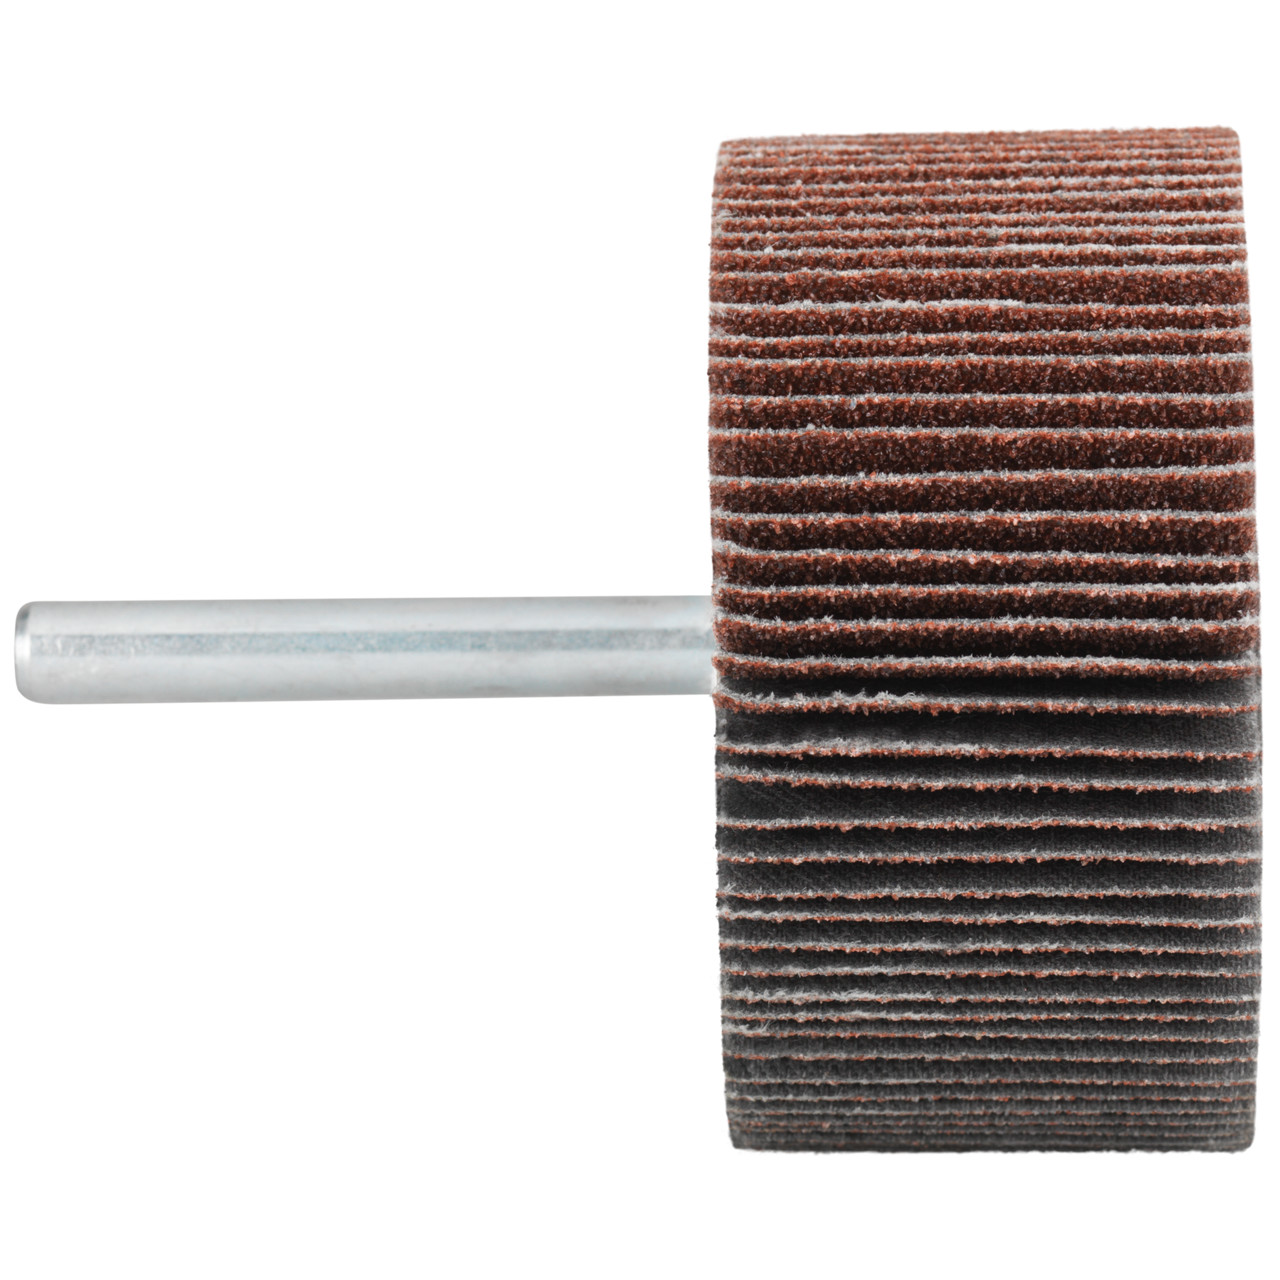 Tyrolit A-P01 C X Pennen DxD 30x10 Voor staal, roestvast staal en non-ferrometalen, P60, vorm: 52LA, Art. 816855